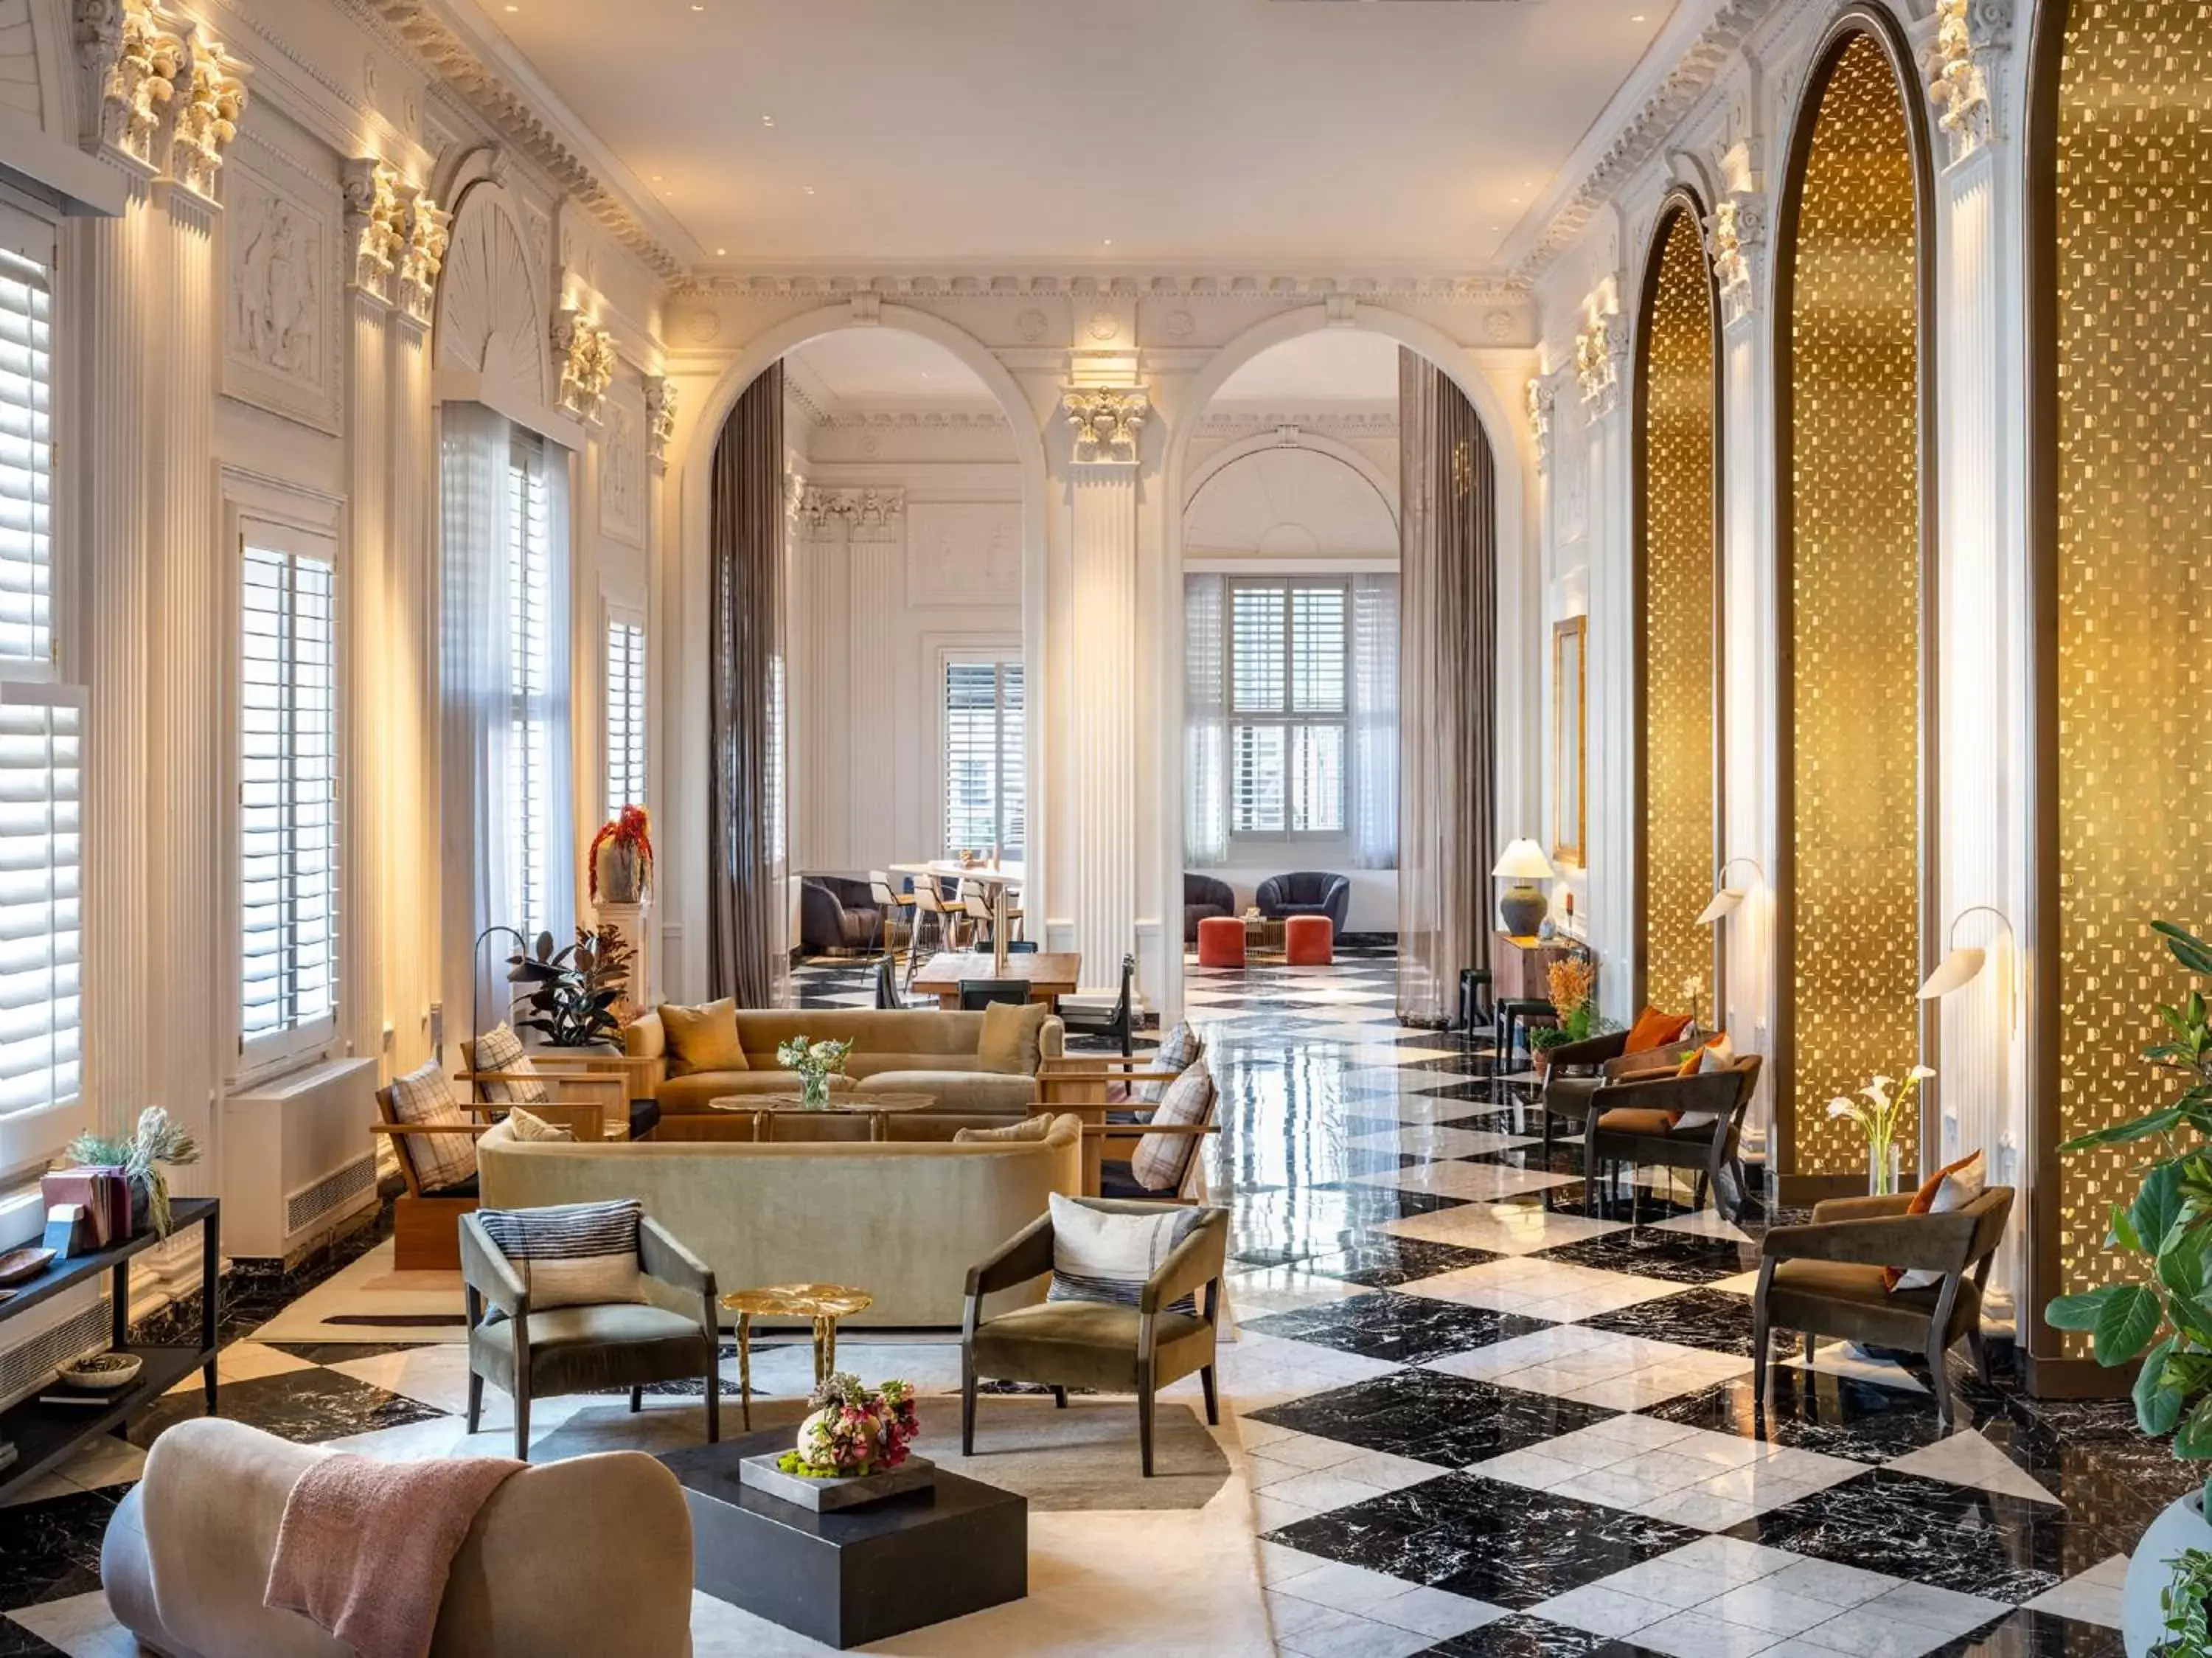 Lobby or reception in Hotel Washington